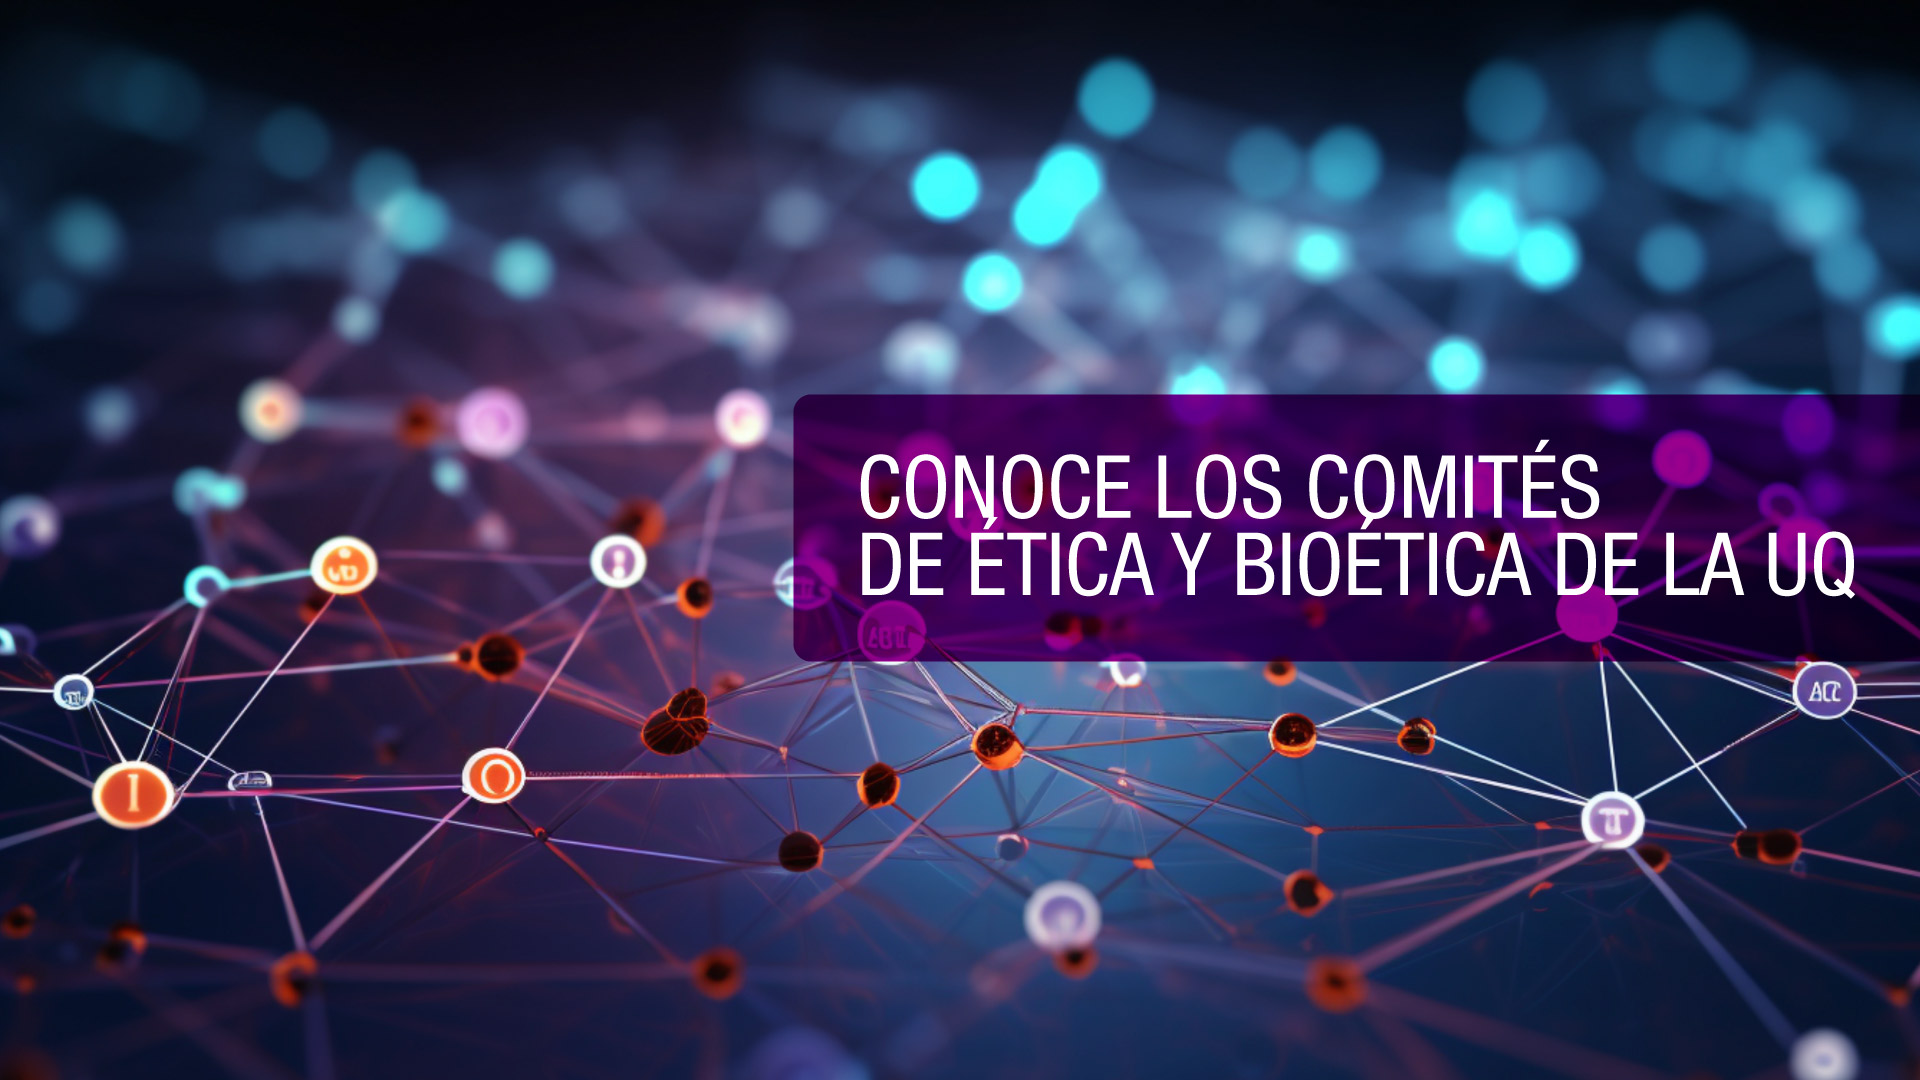 La Uniquindío le apuesta a la ética y bioética en sus investigaciones para garantizar las buenas prácticas en ciencia